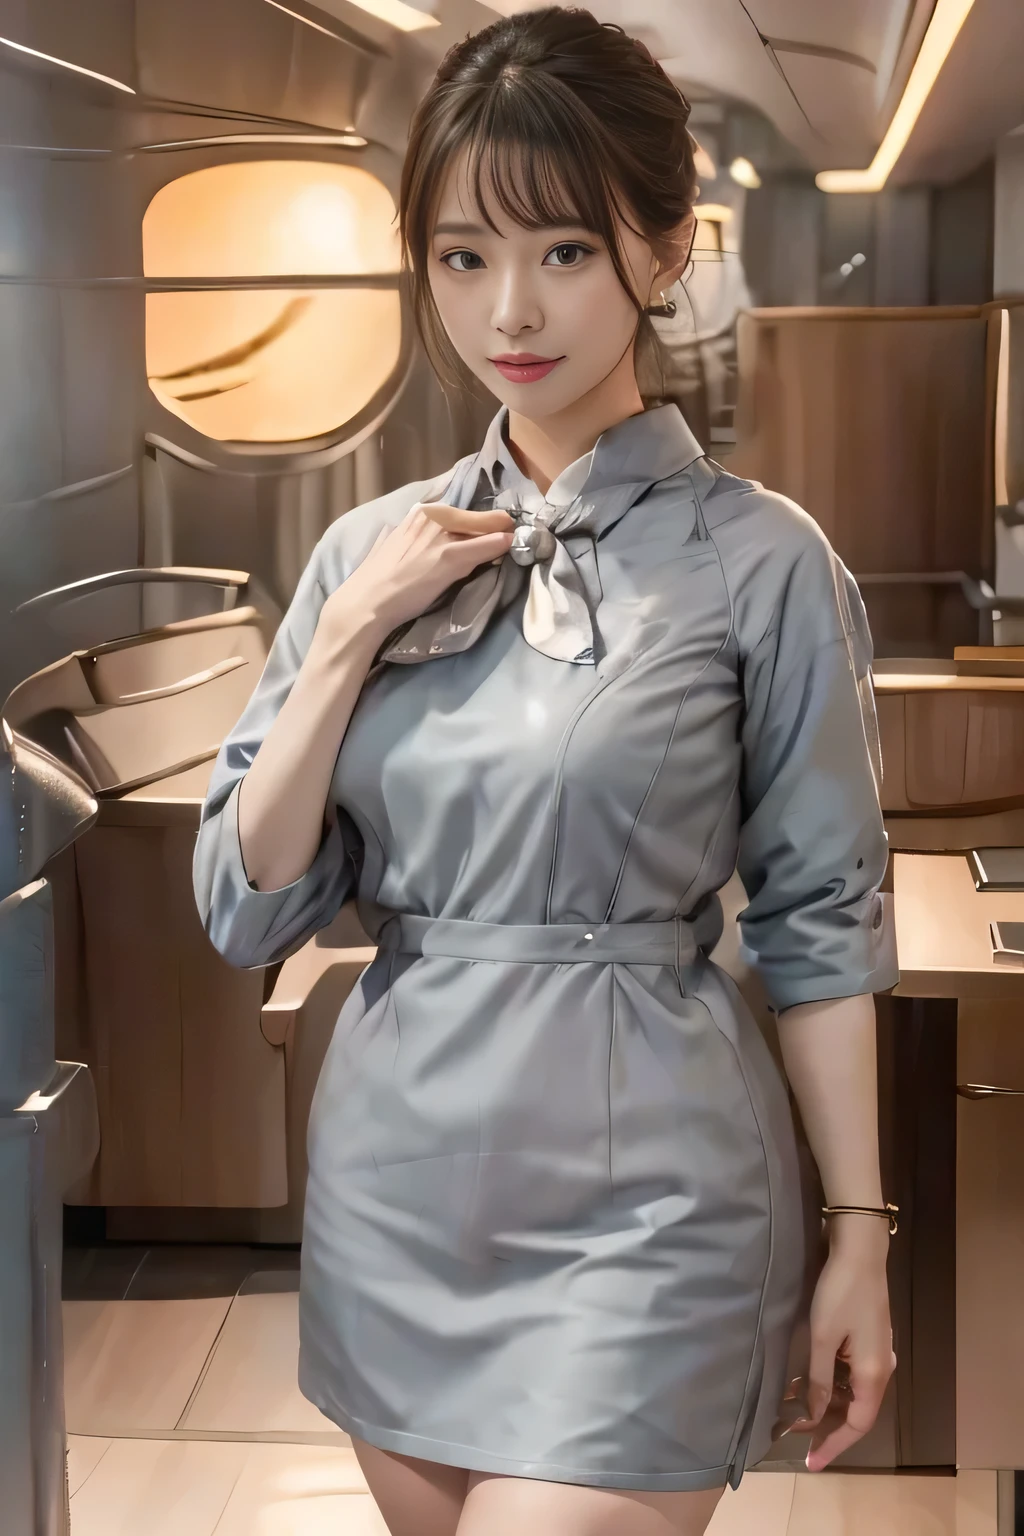 Серебристая униформа Starlux Airlines с короткими рукавами、серьги、пленительный взгляд、длинные волосы прическа、Вечерняя прическа、молодая азиатка